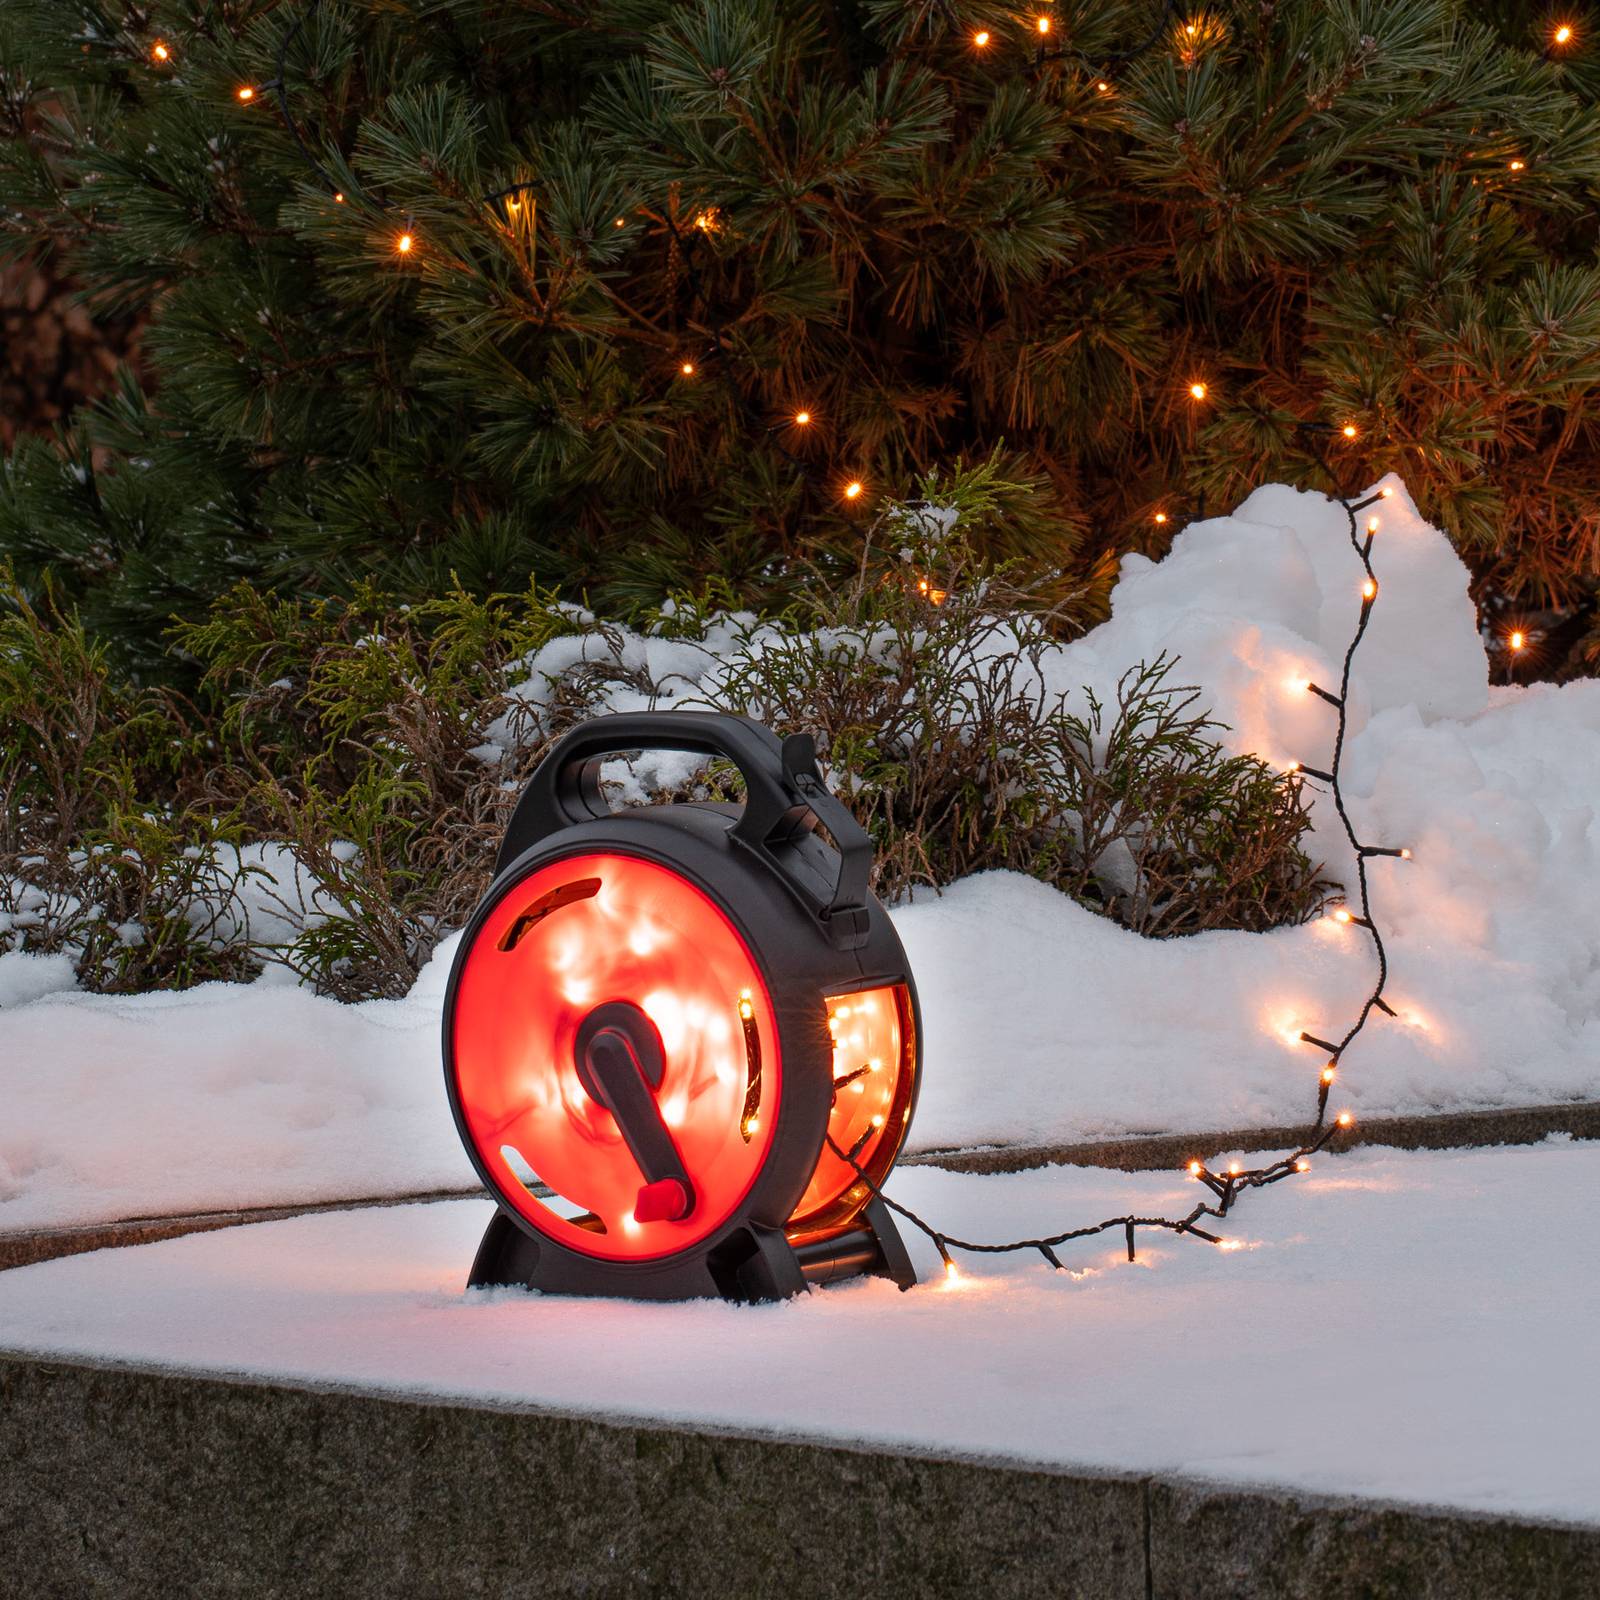 Konstsmide Christmas LED víla světla Micro jantarová 100 plamenů 6,93 m